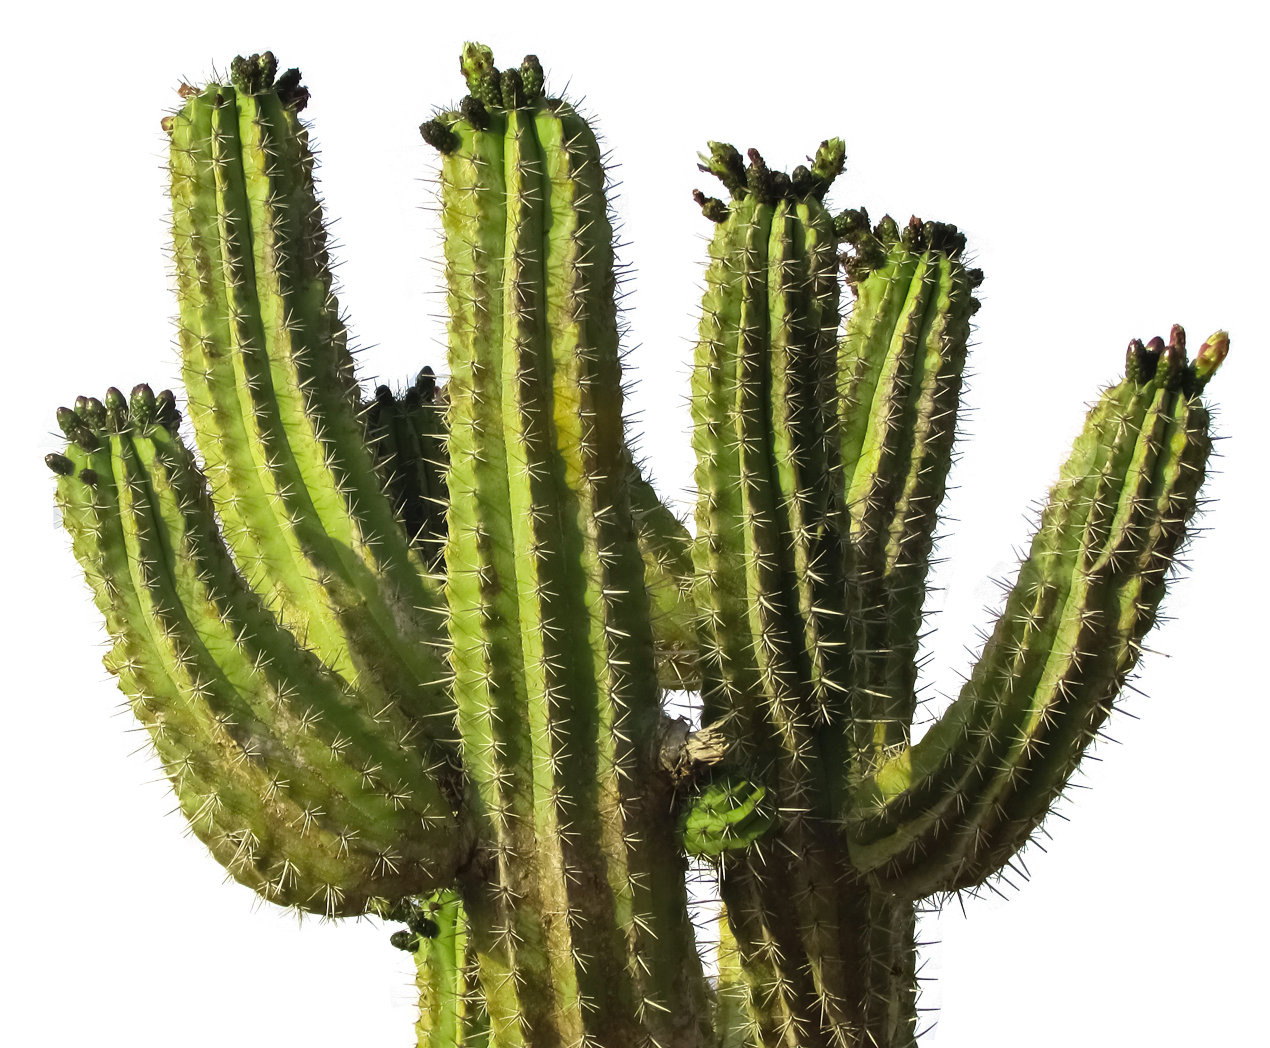 Cactus Desert Plant Png Transparent Image - Cactus, Transparent background PNG HD thumbnail